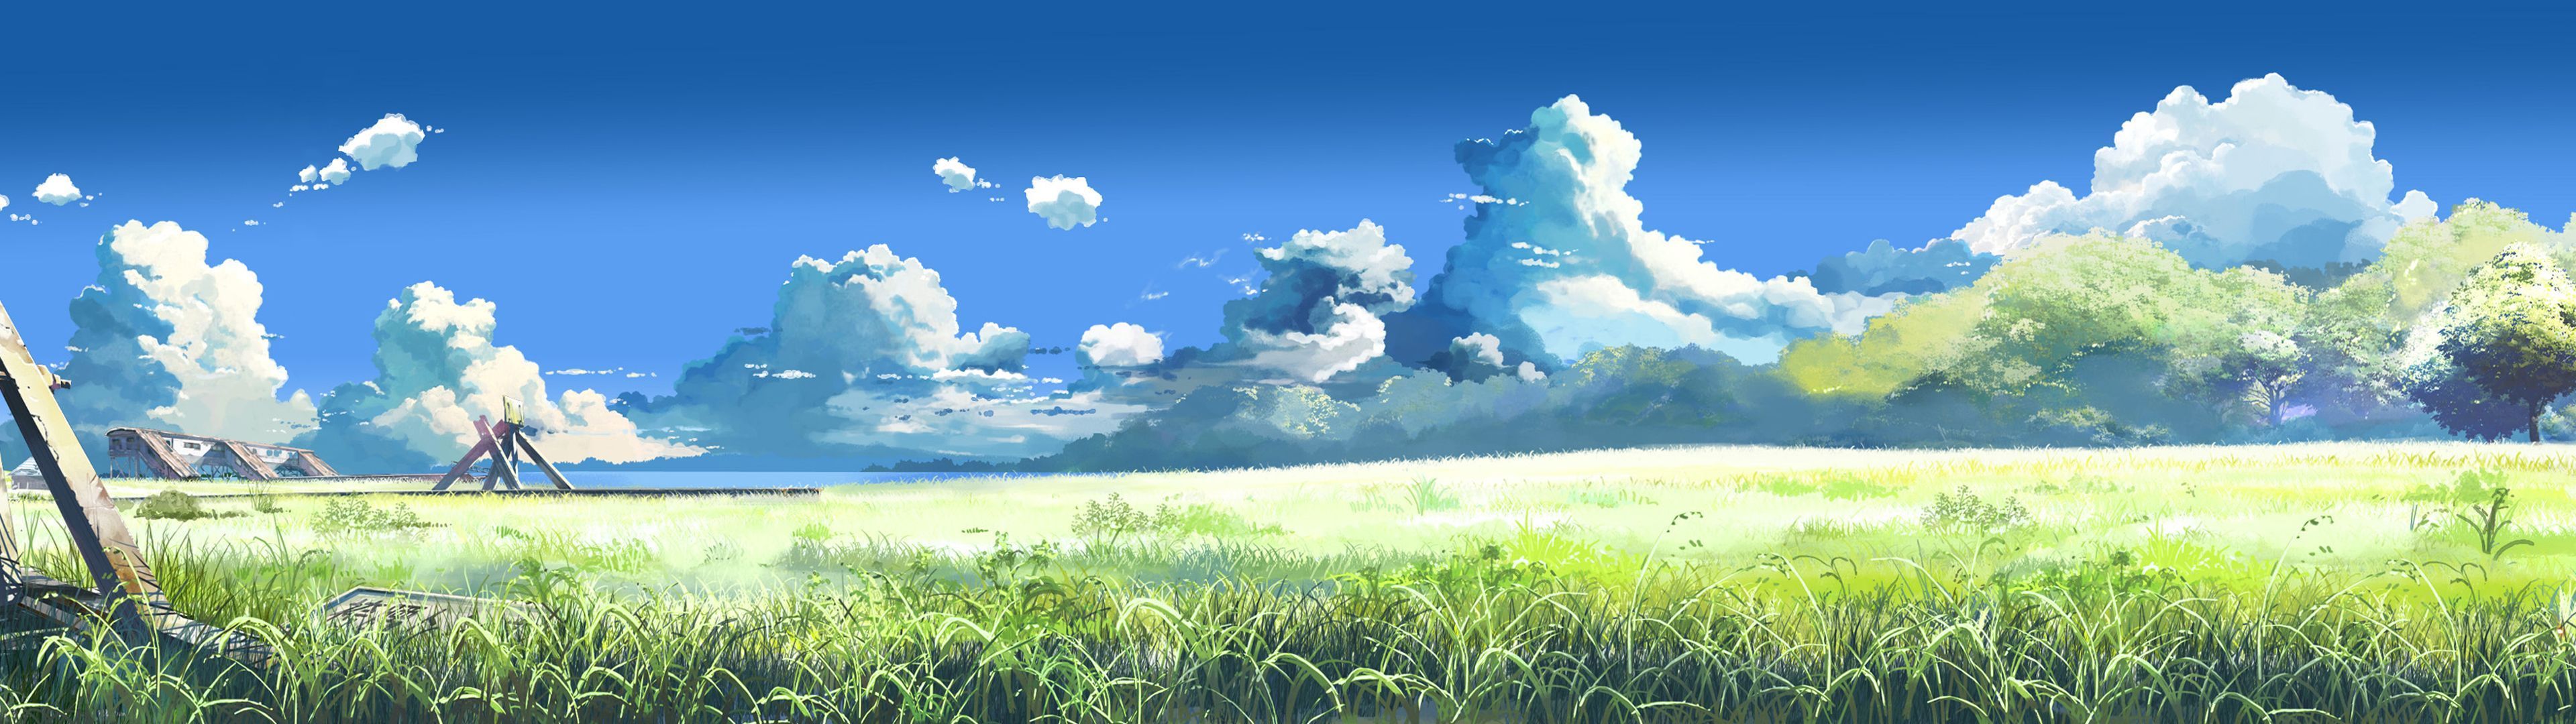 Anime Scenery Dual Screen Wallpaper 3840x1080 ID43355